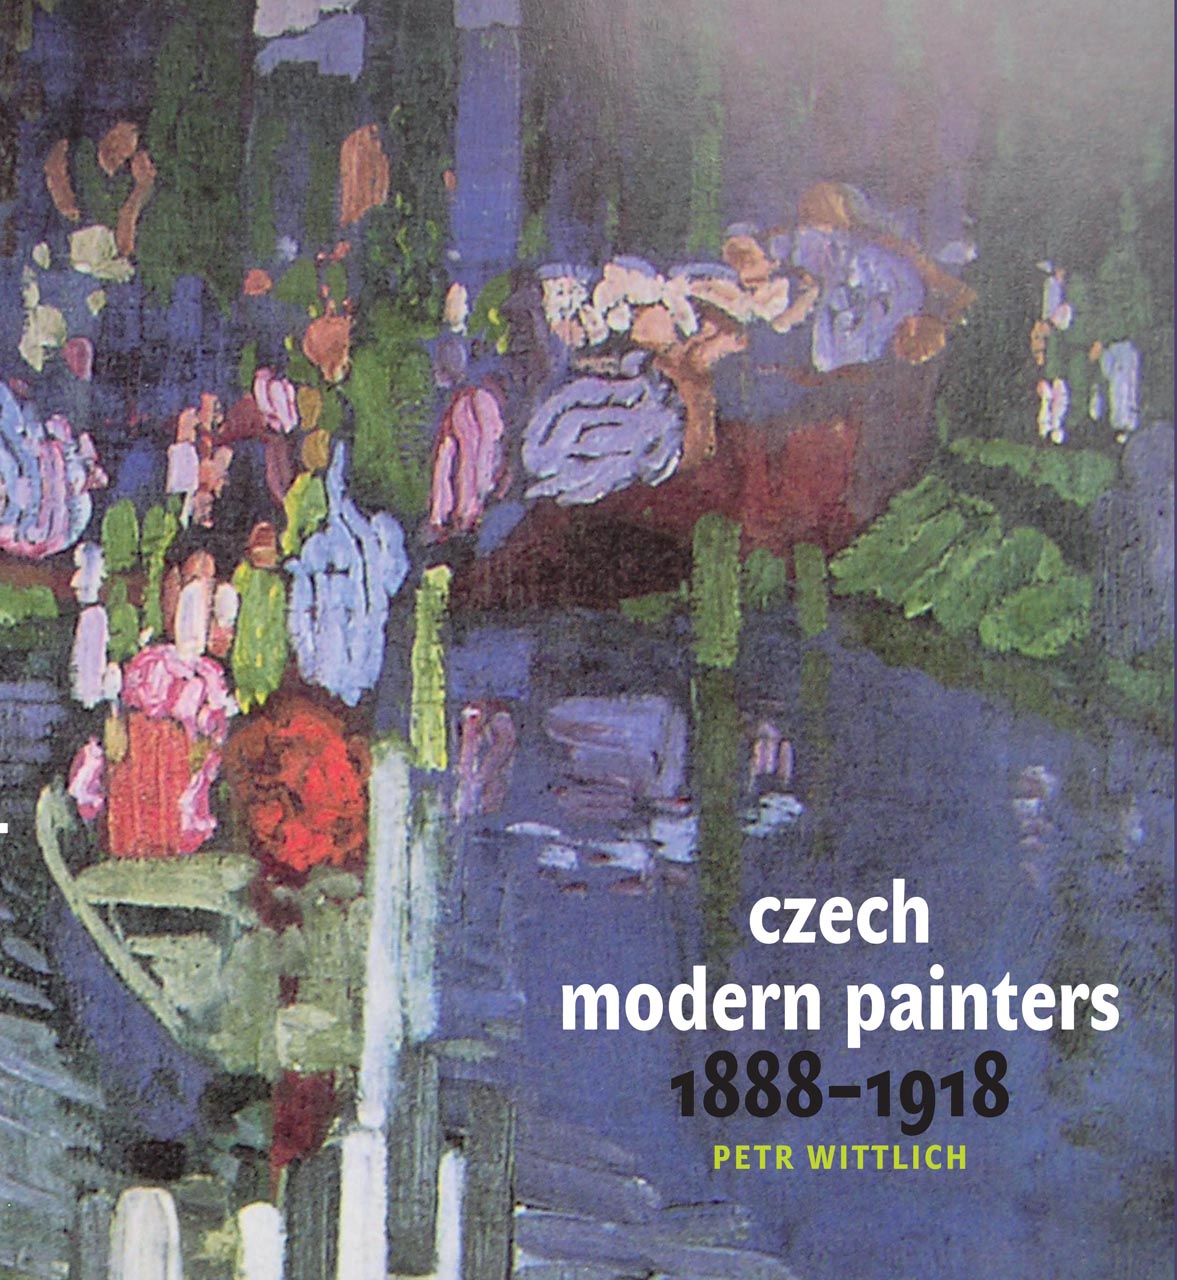 Czech modern painters 1888 – 1918